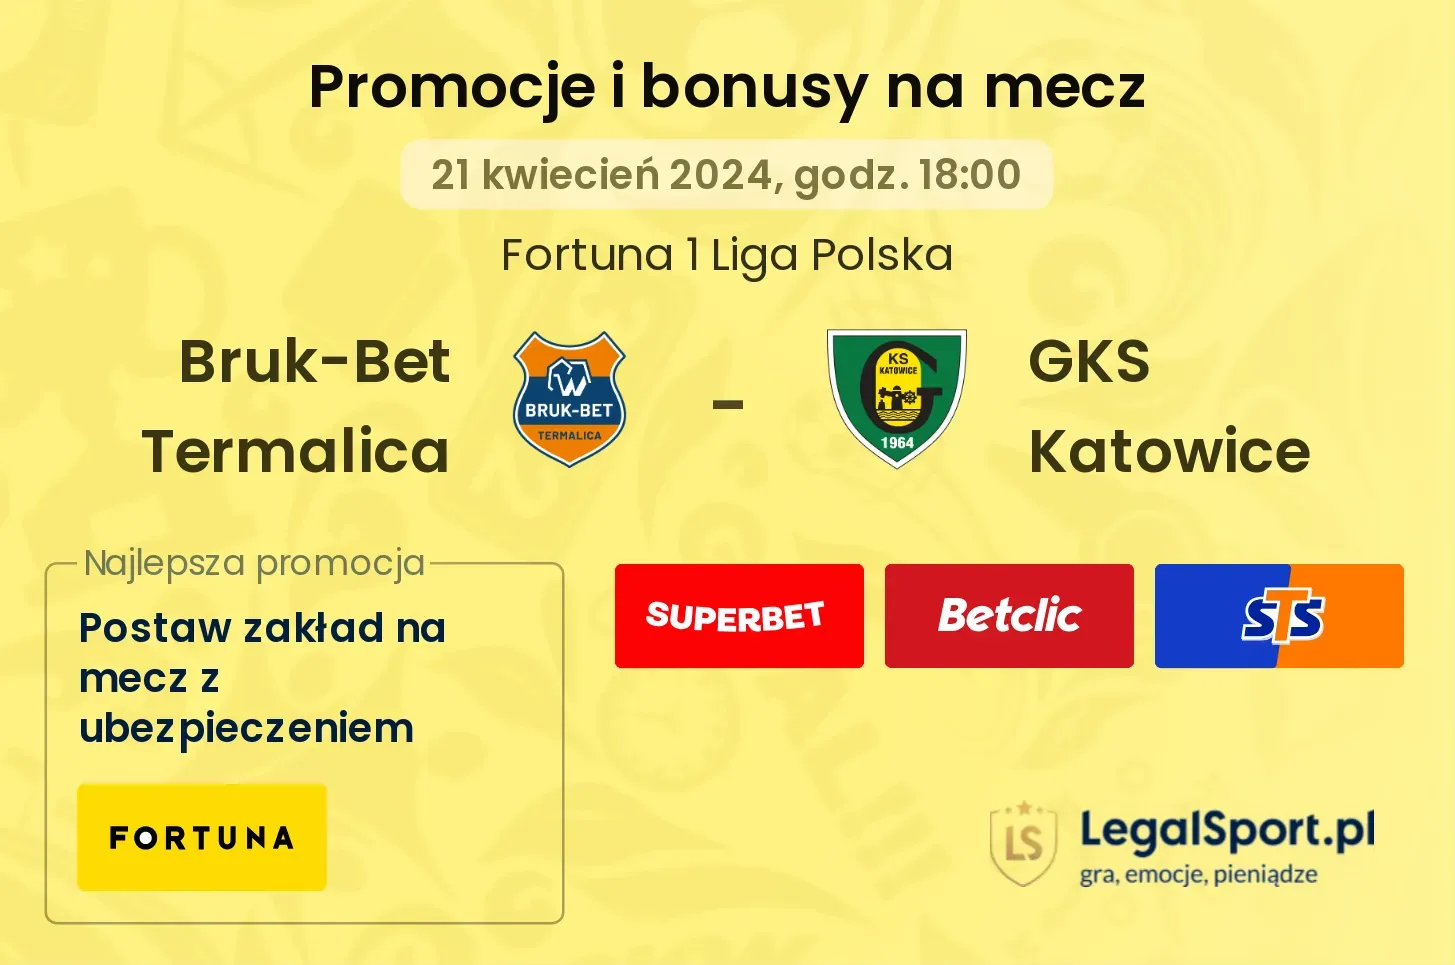 Bruk-Bet Termalica - GKS Katowice promocje bonusy na mecz